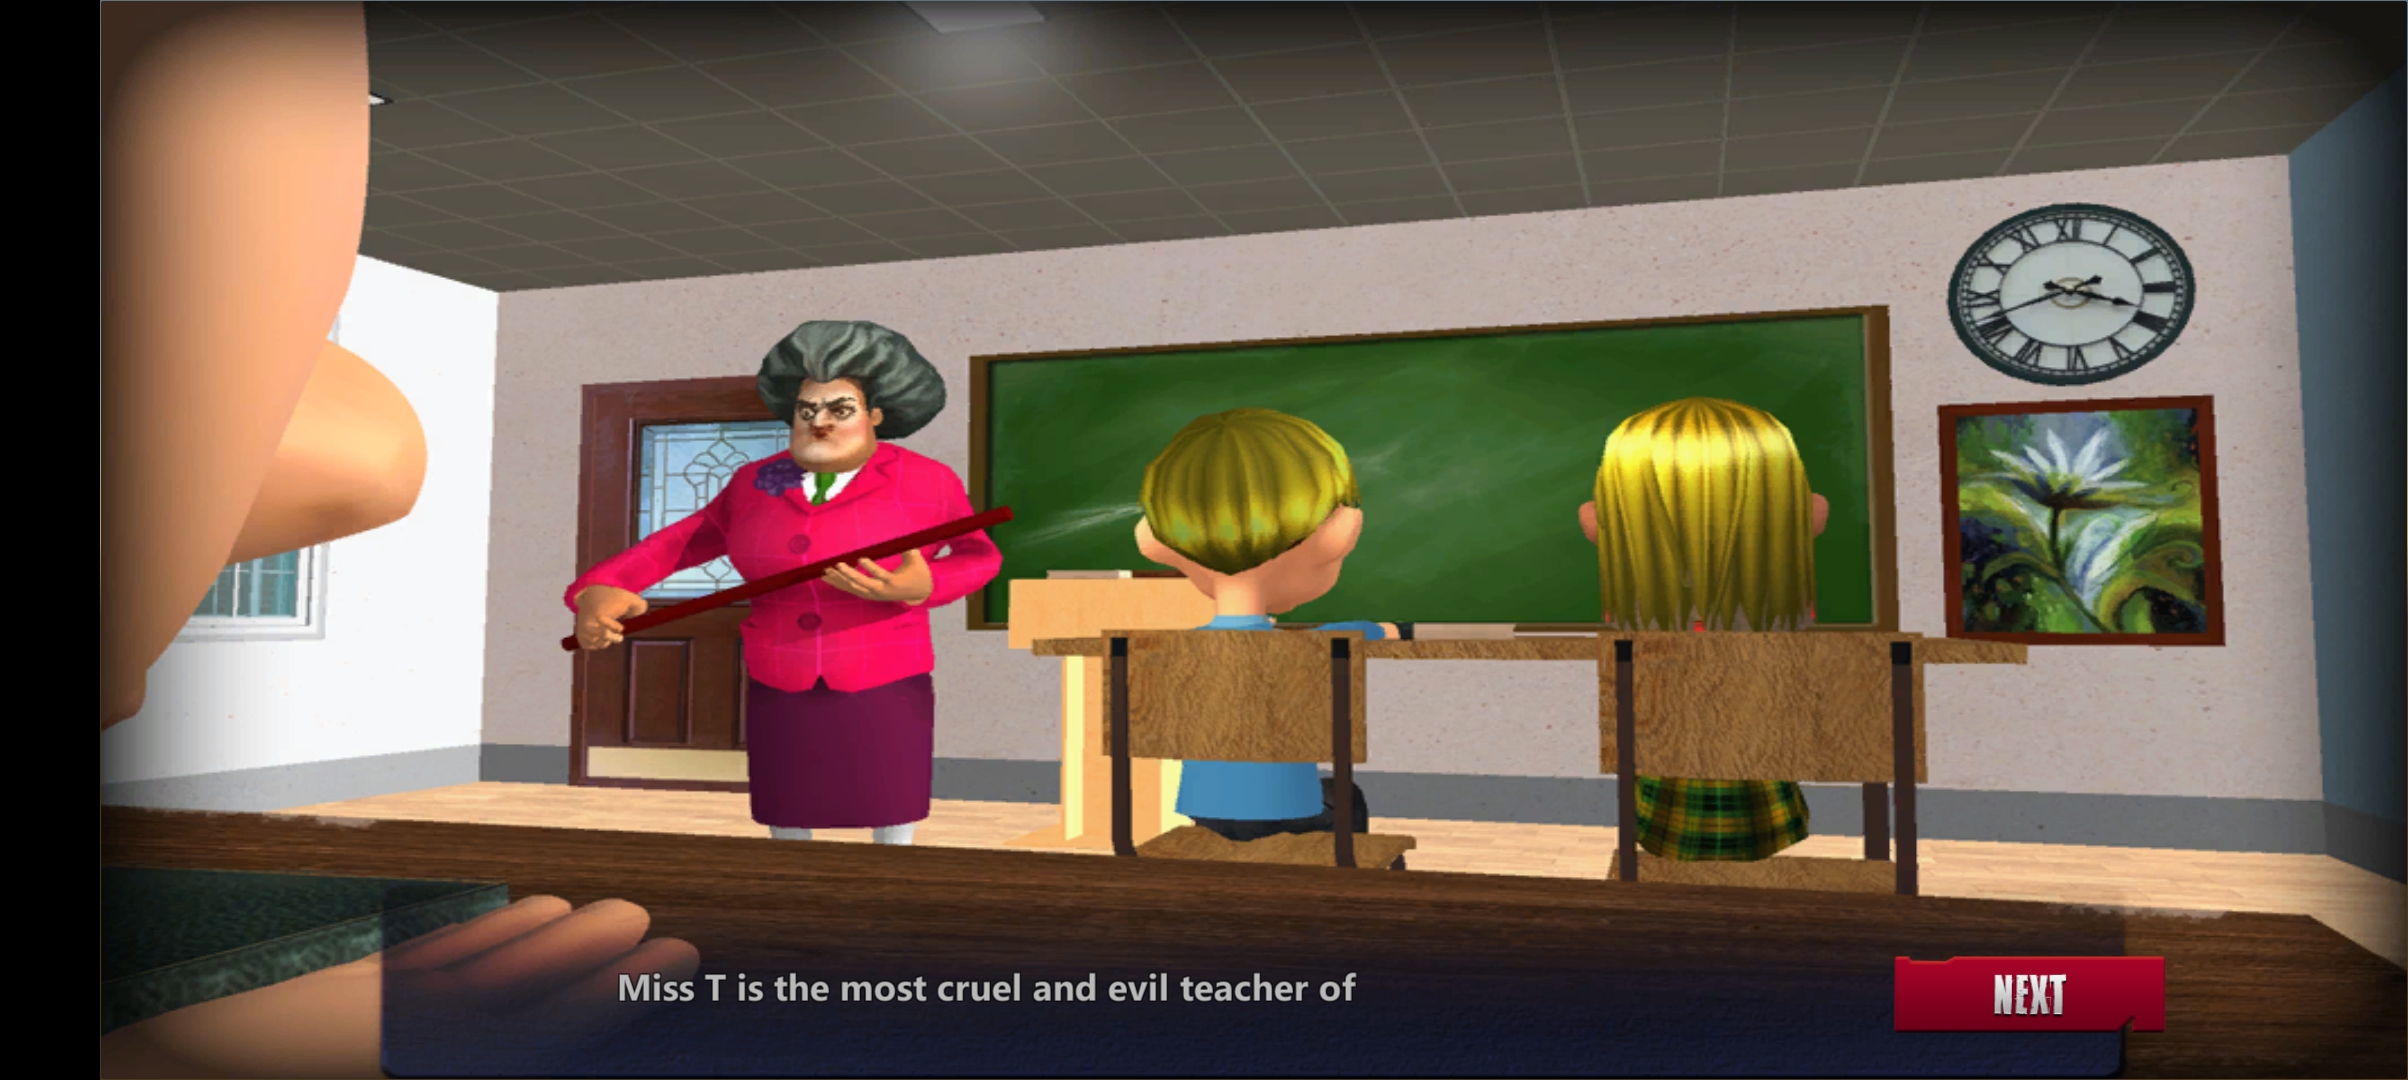 恐怖老师3D破解版截屏3